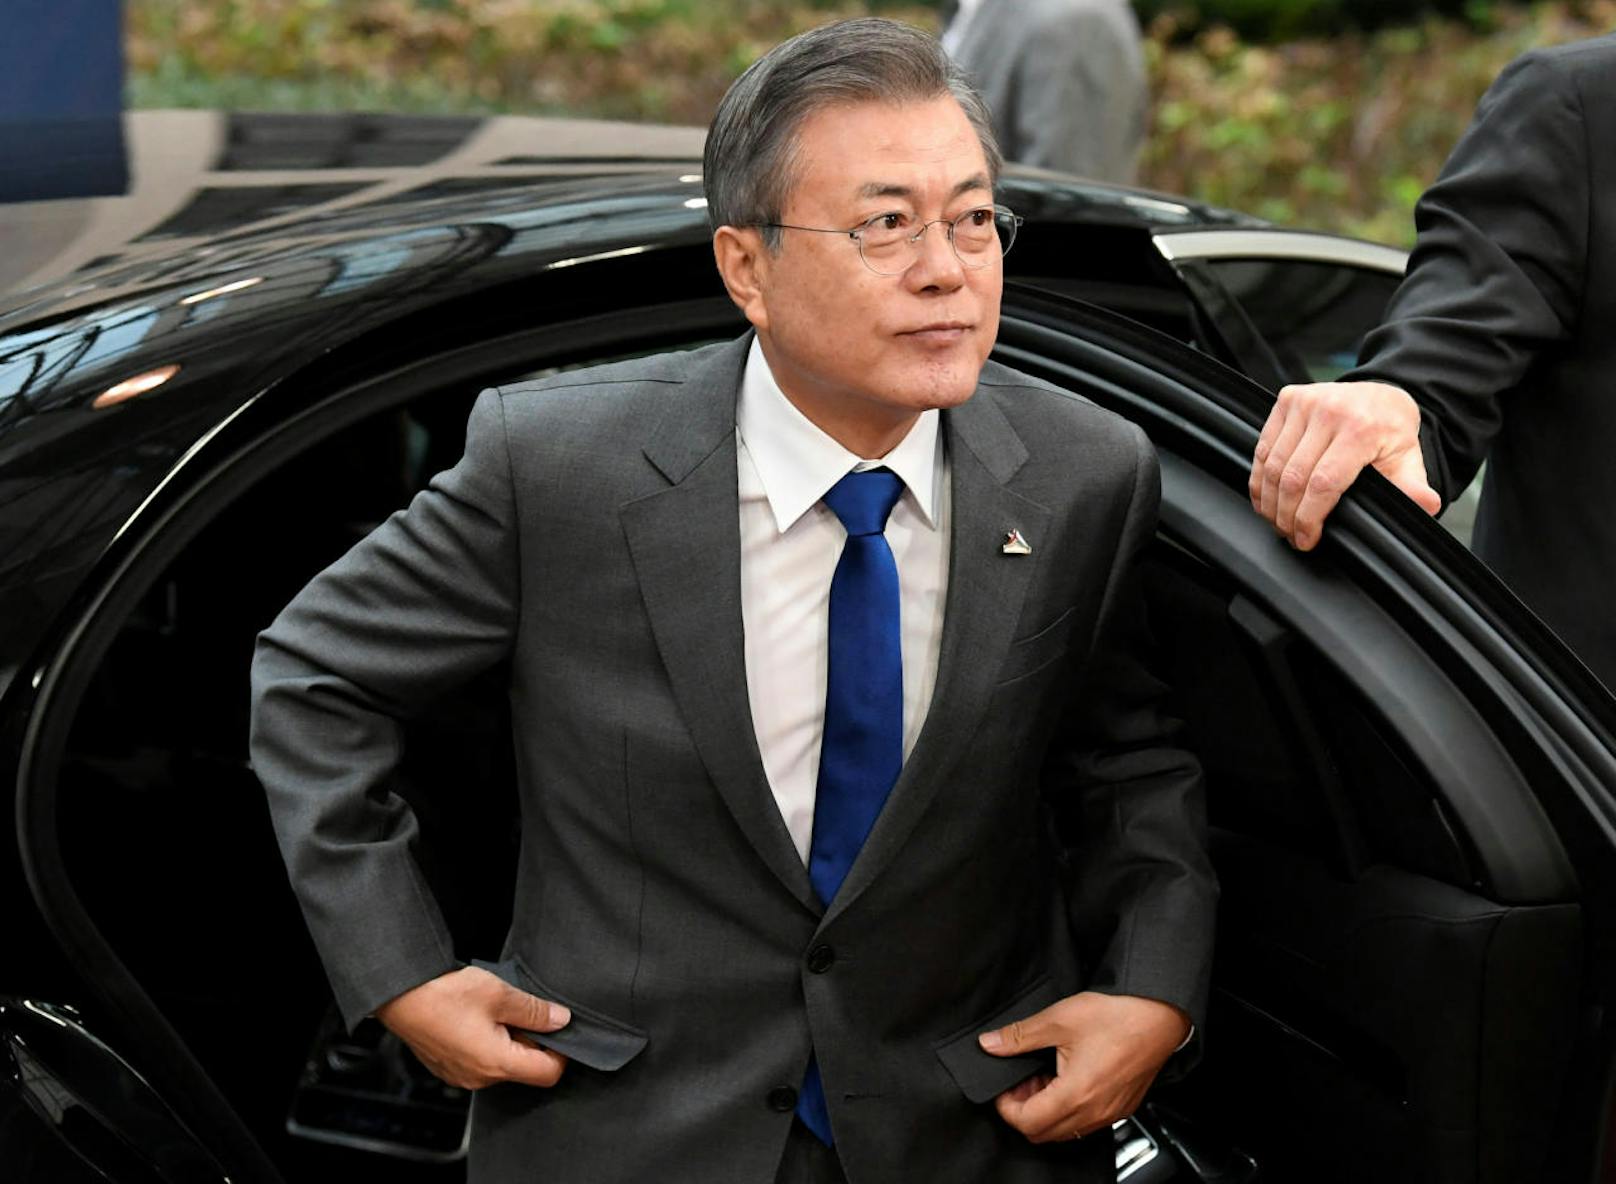 <b>Platz 21: Südkorea</b>
Moon Jae-in, Präsident von Südkorea, bezieht ein Jahresgehalt von <b>171.300 Euro</b>. Ebenfalls rund das Fünffache eines südkoreanischen Durchschnittsgehalts von 33.200 Euro jährlich.